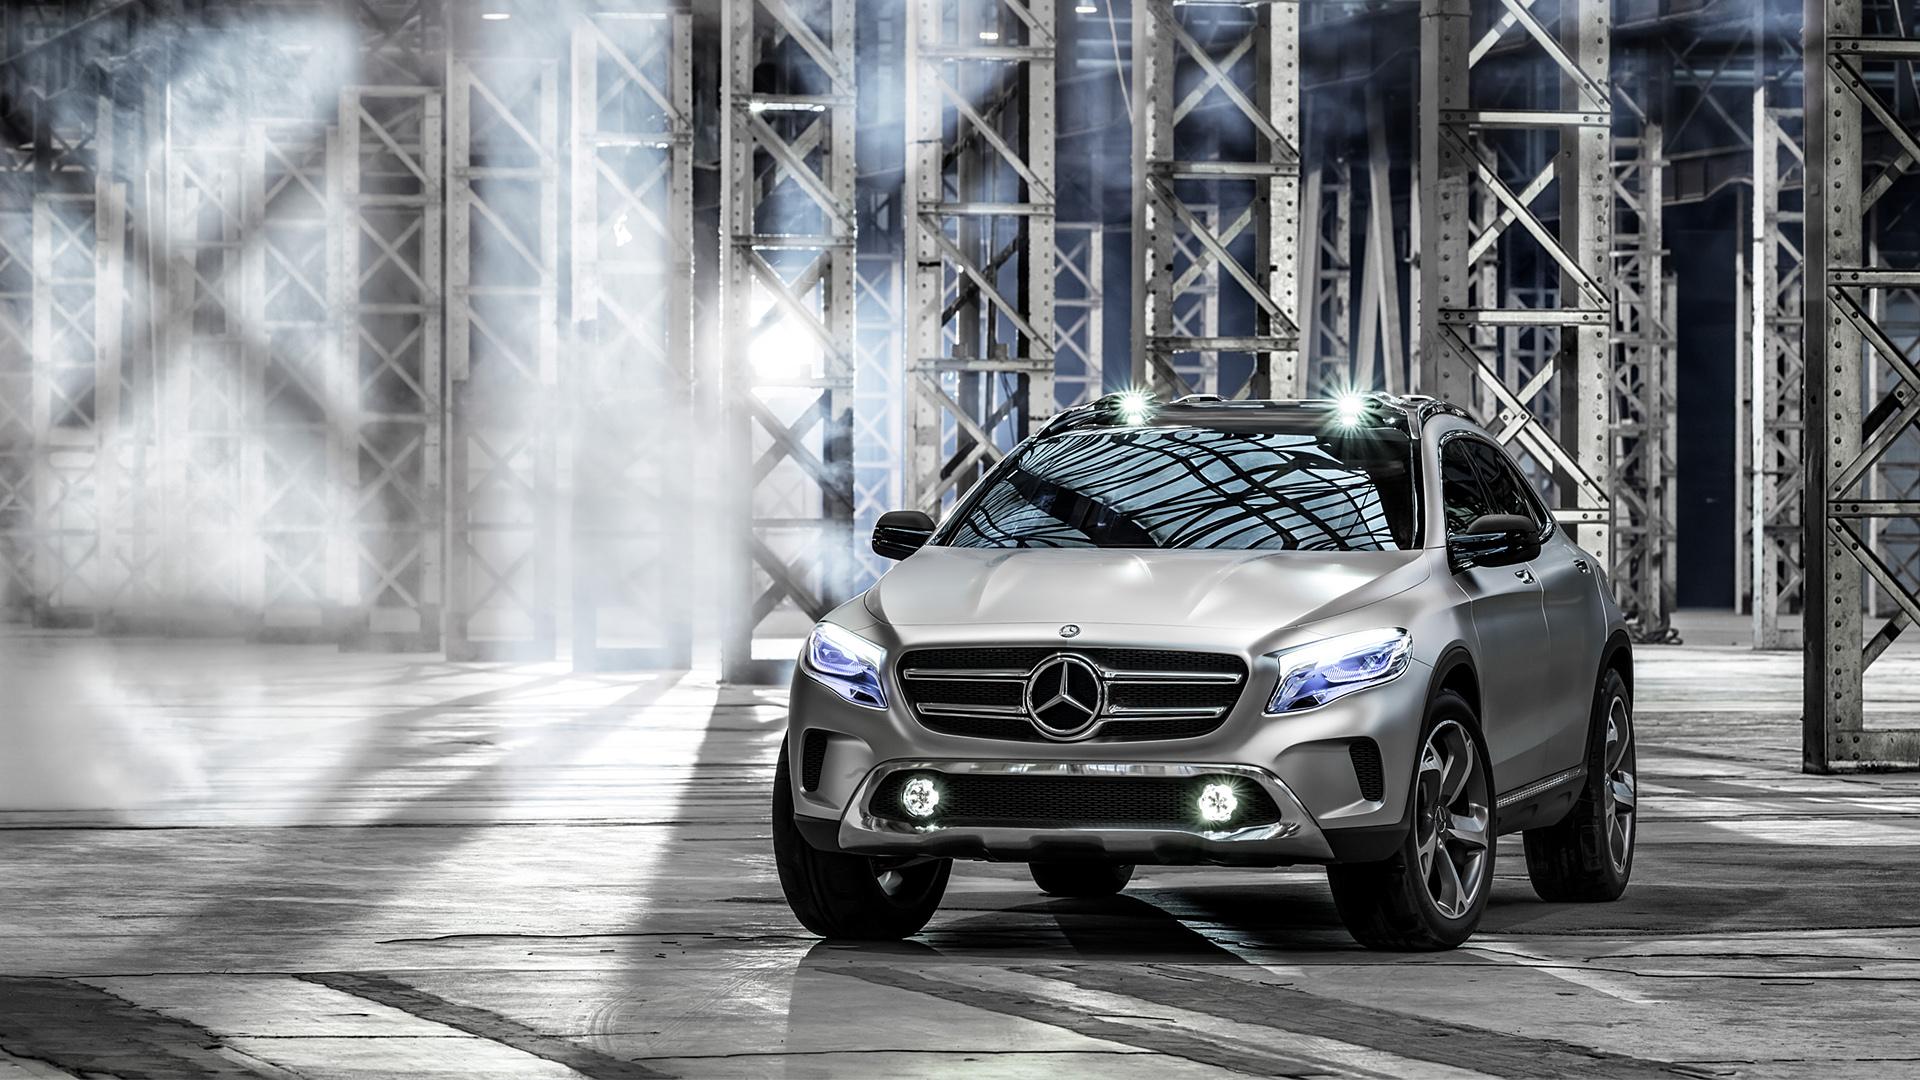 Mercedes Benz GLA Concept Wallpaper & HD Image